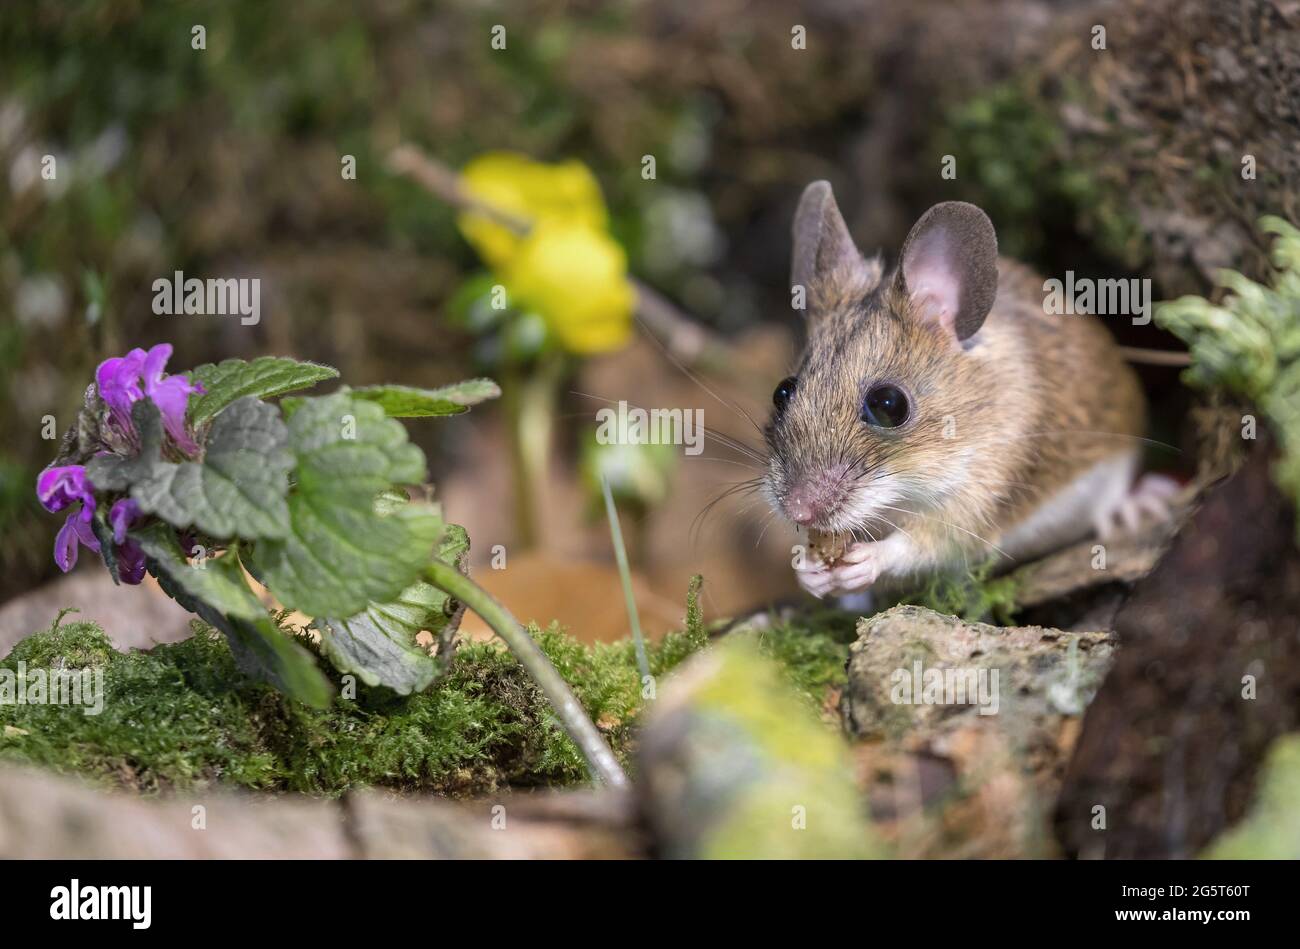 Ratón de cuello amarillo (Apodemus flavicollis), en el suelo del bosque, Alemania, Mecklemburgo-Pomerania Occidental Foto de stock